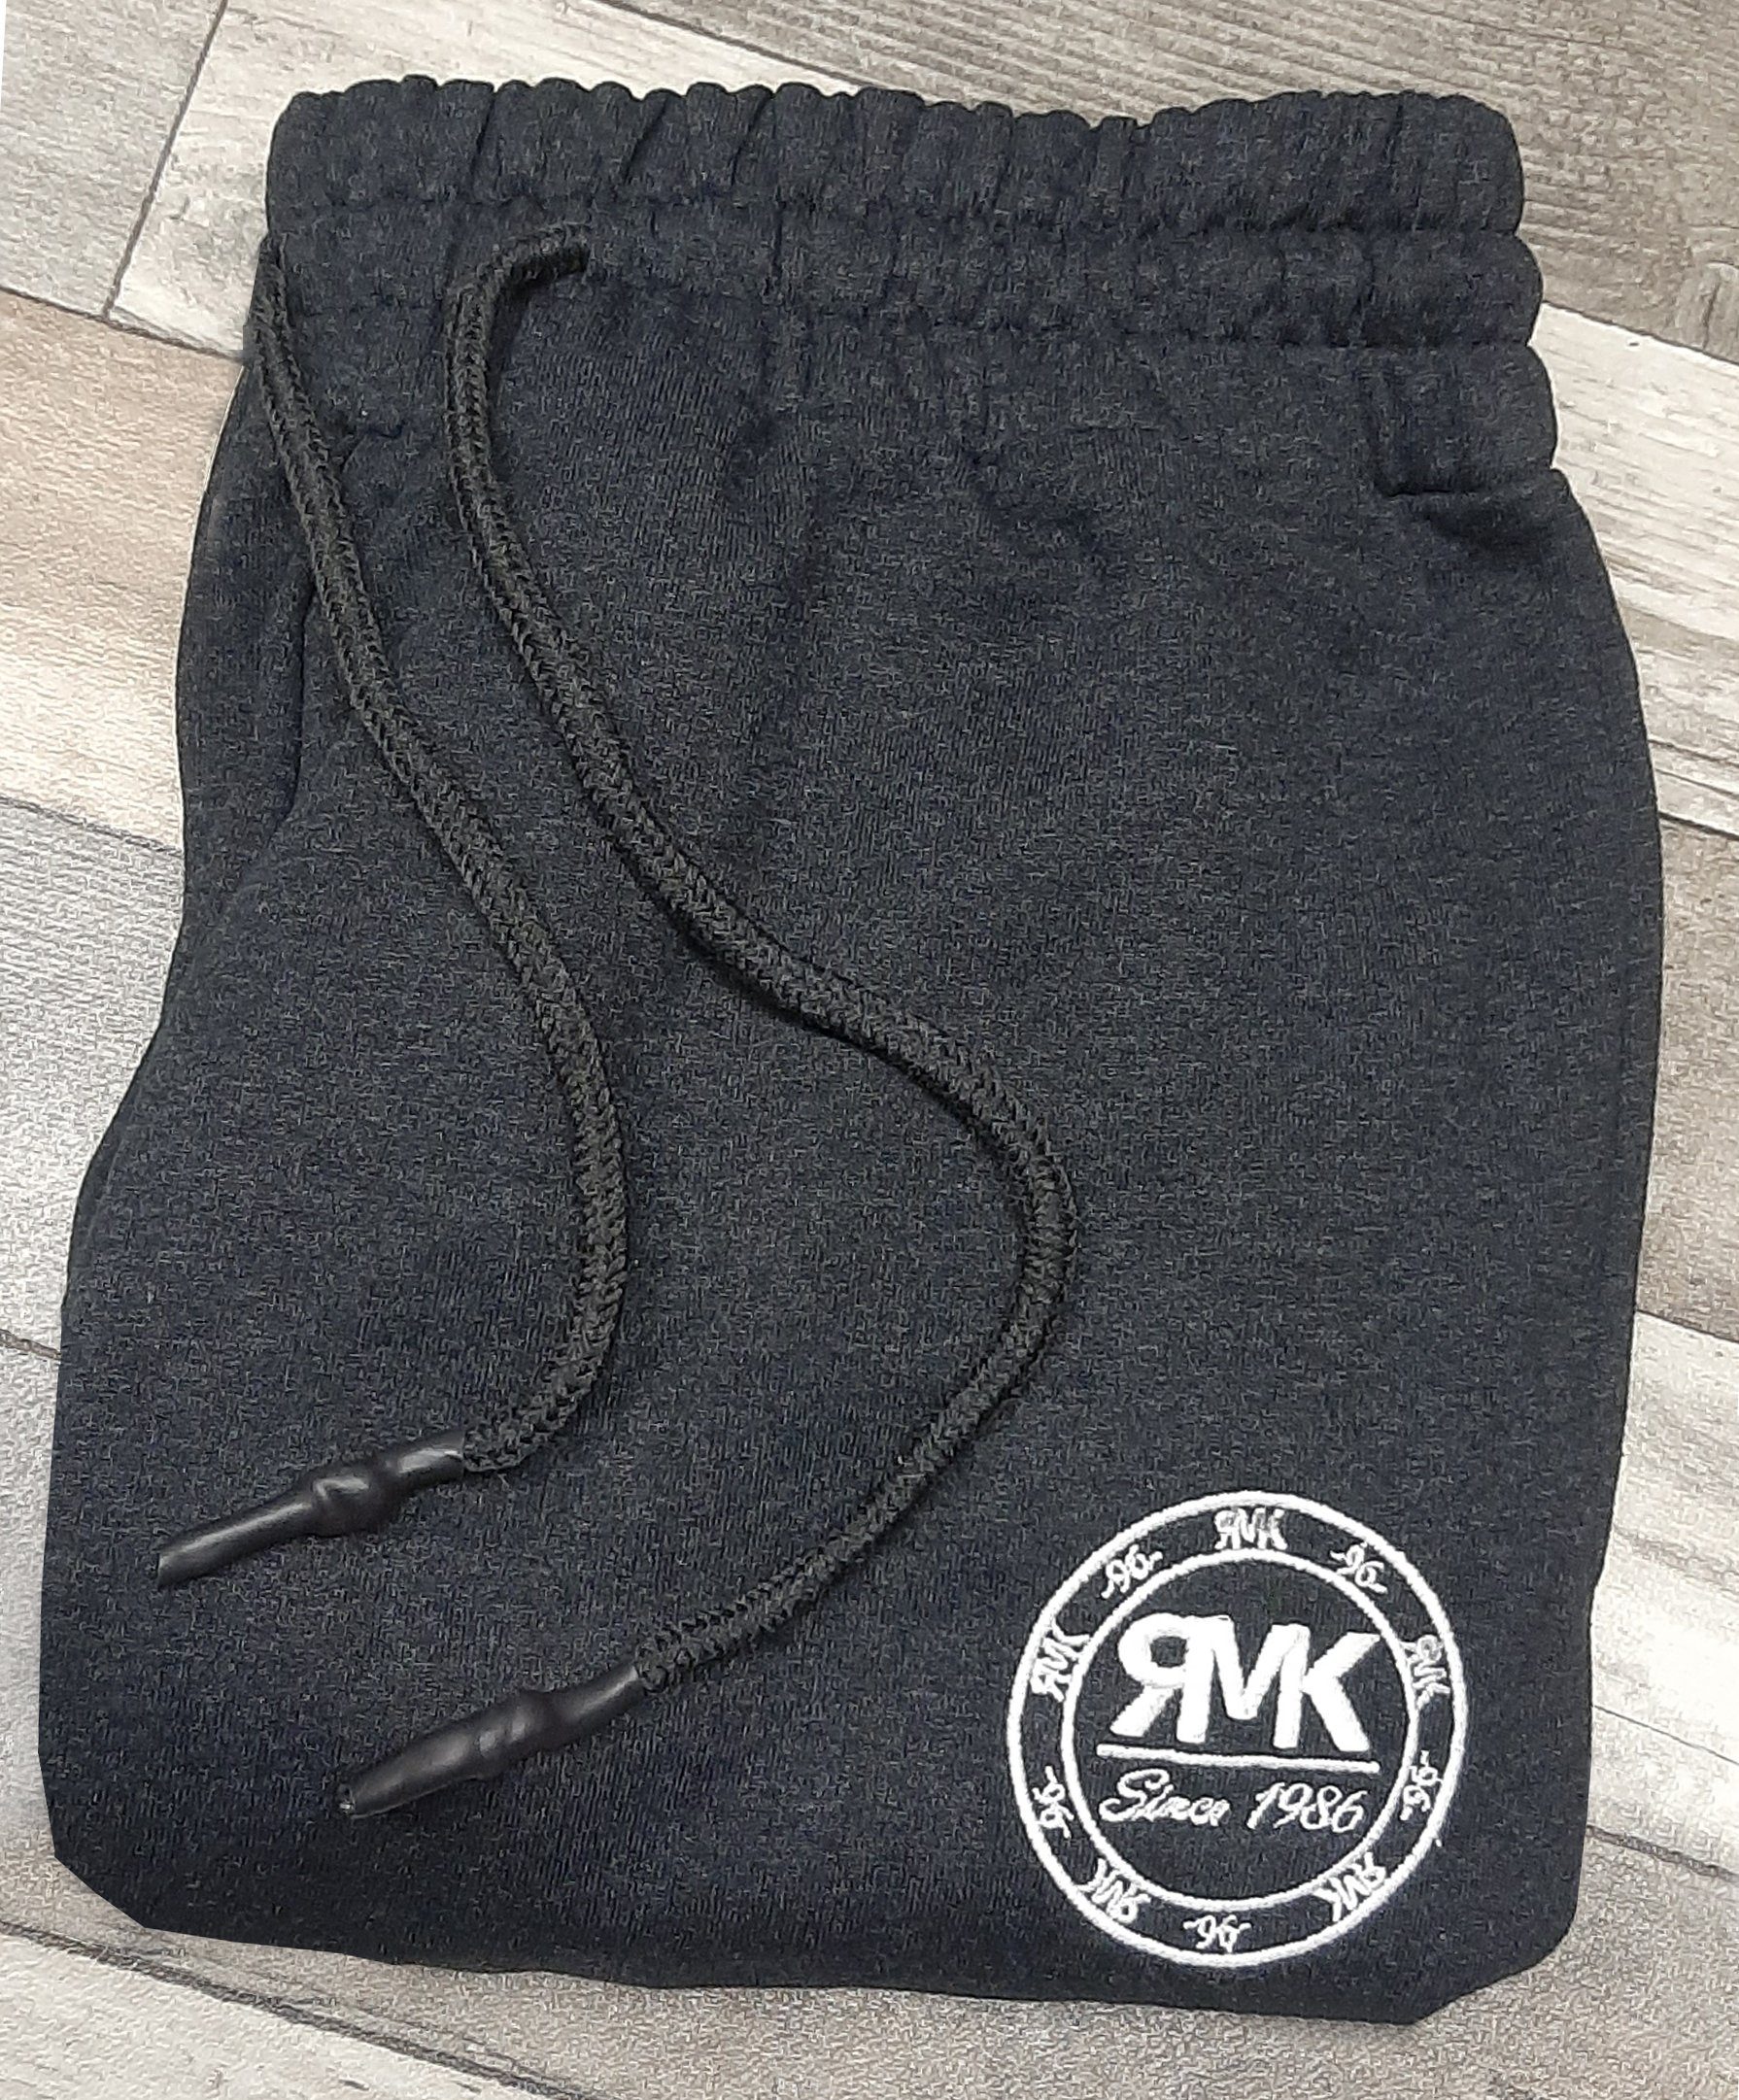 Trainingshose Khaki RMK Fitnesshose Bund elastischer bequem gemütlich Sporthose Jogginghose Herren Sweatpants